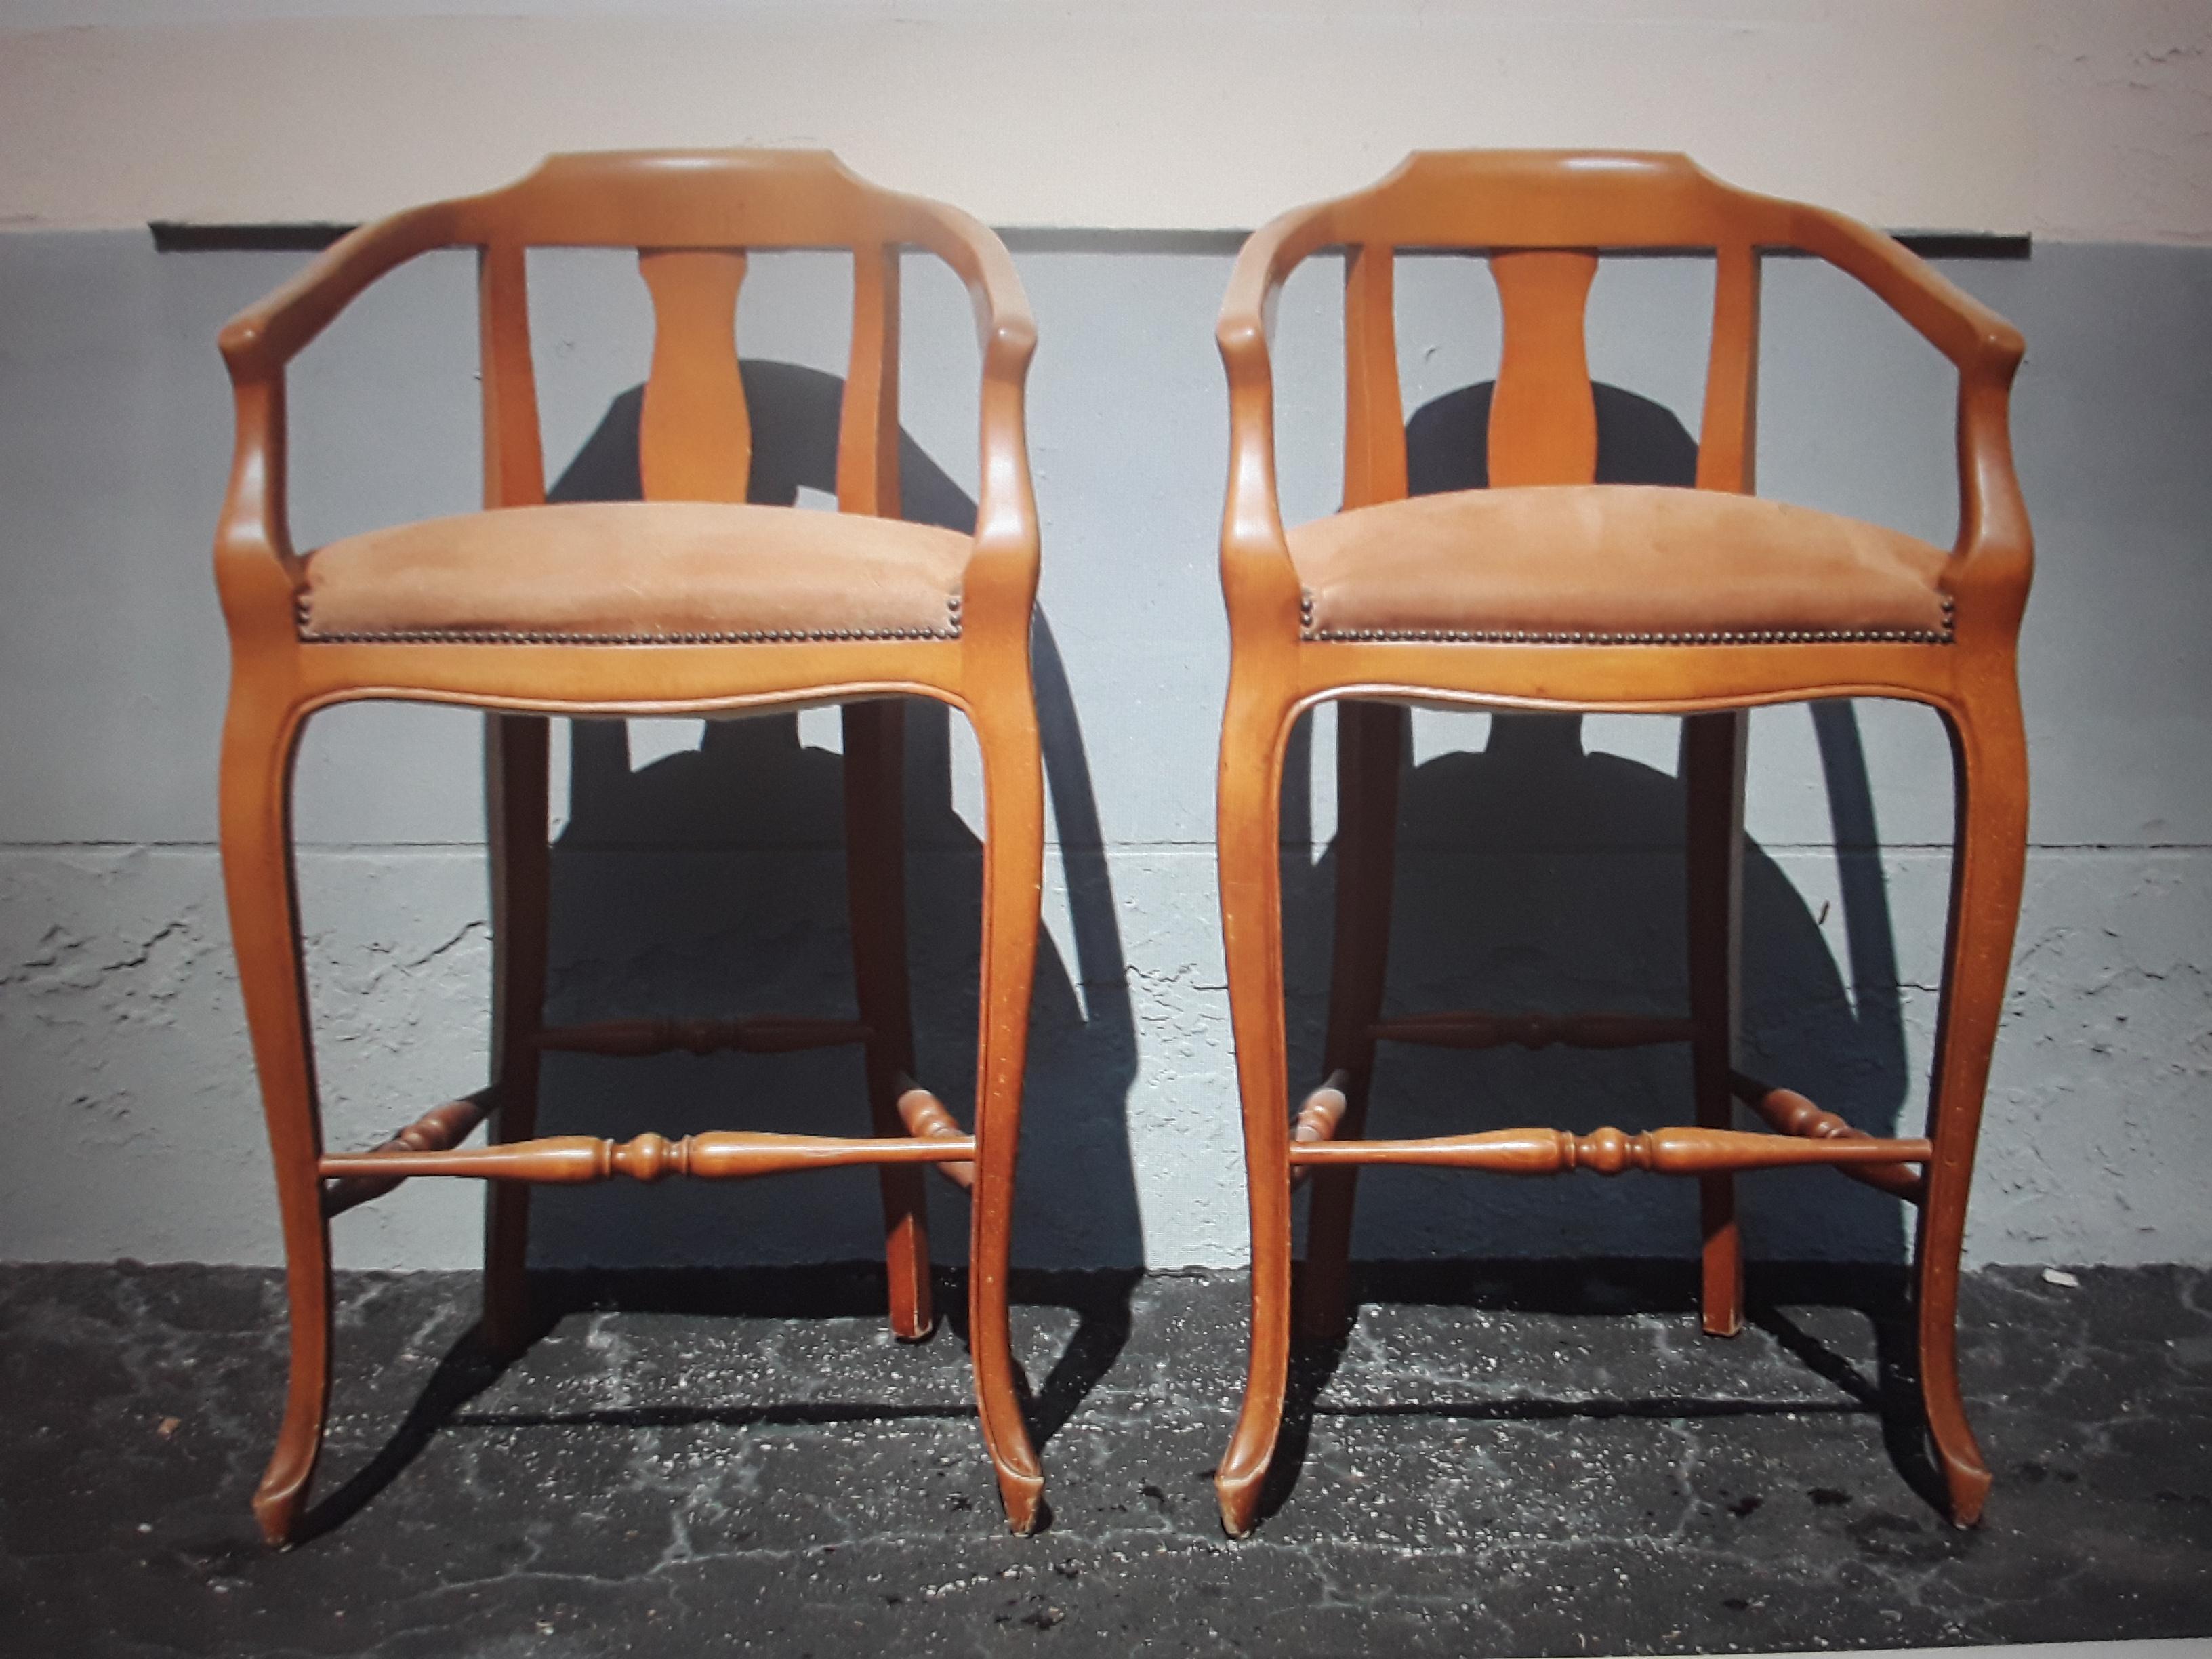 Paar Barhocker im traditionellen Vintage-Stil der 1970er Jahre. Heller getöntes Holz.